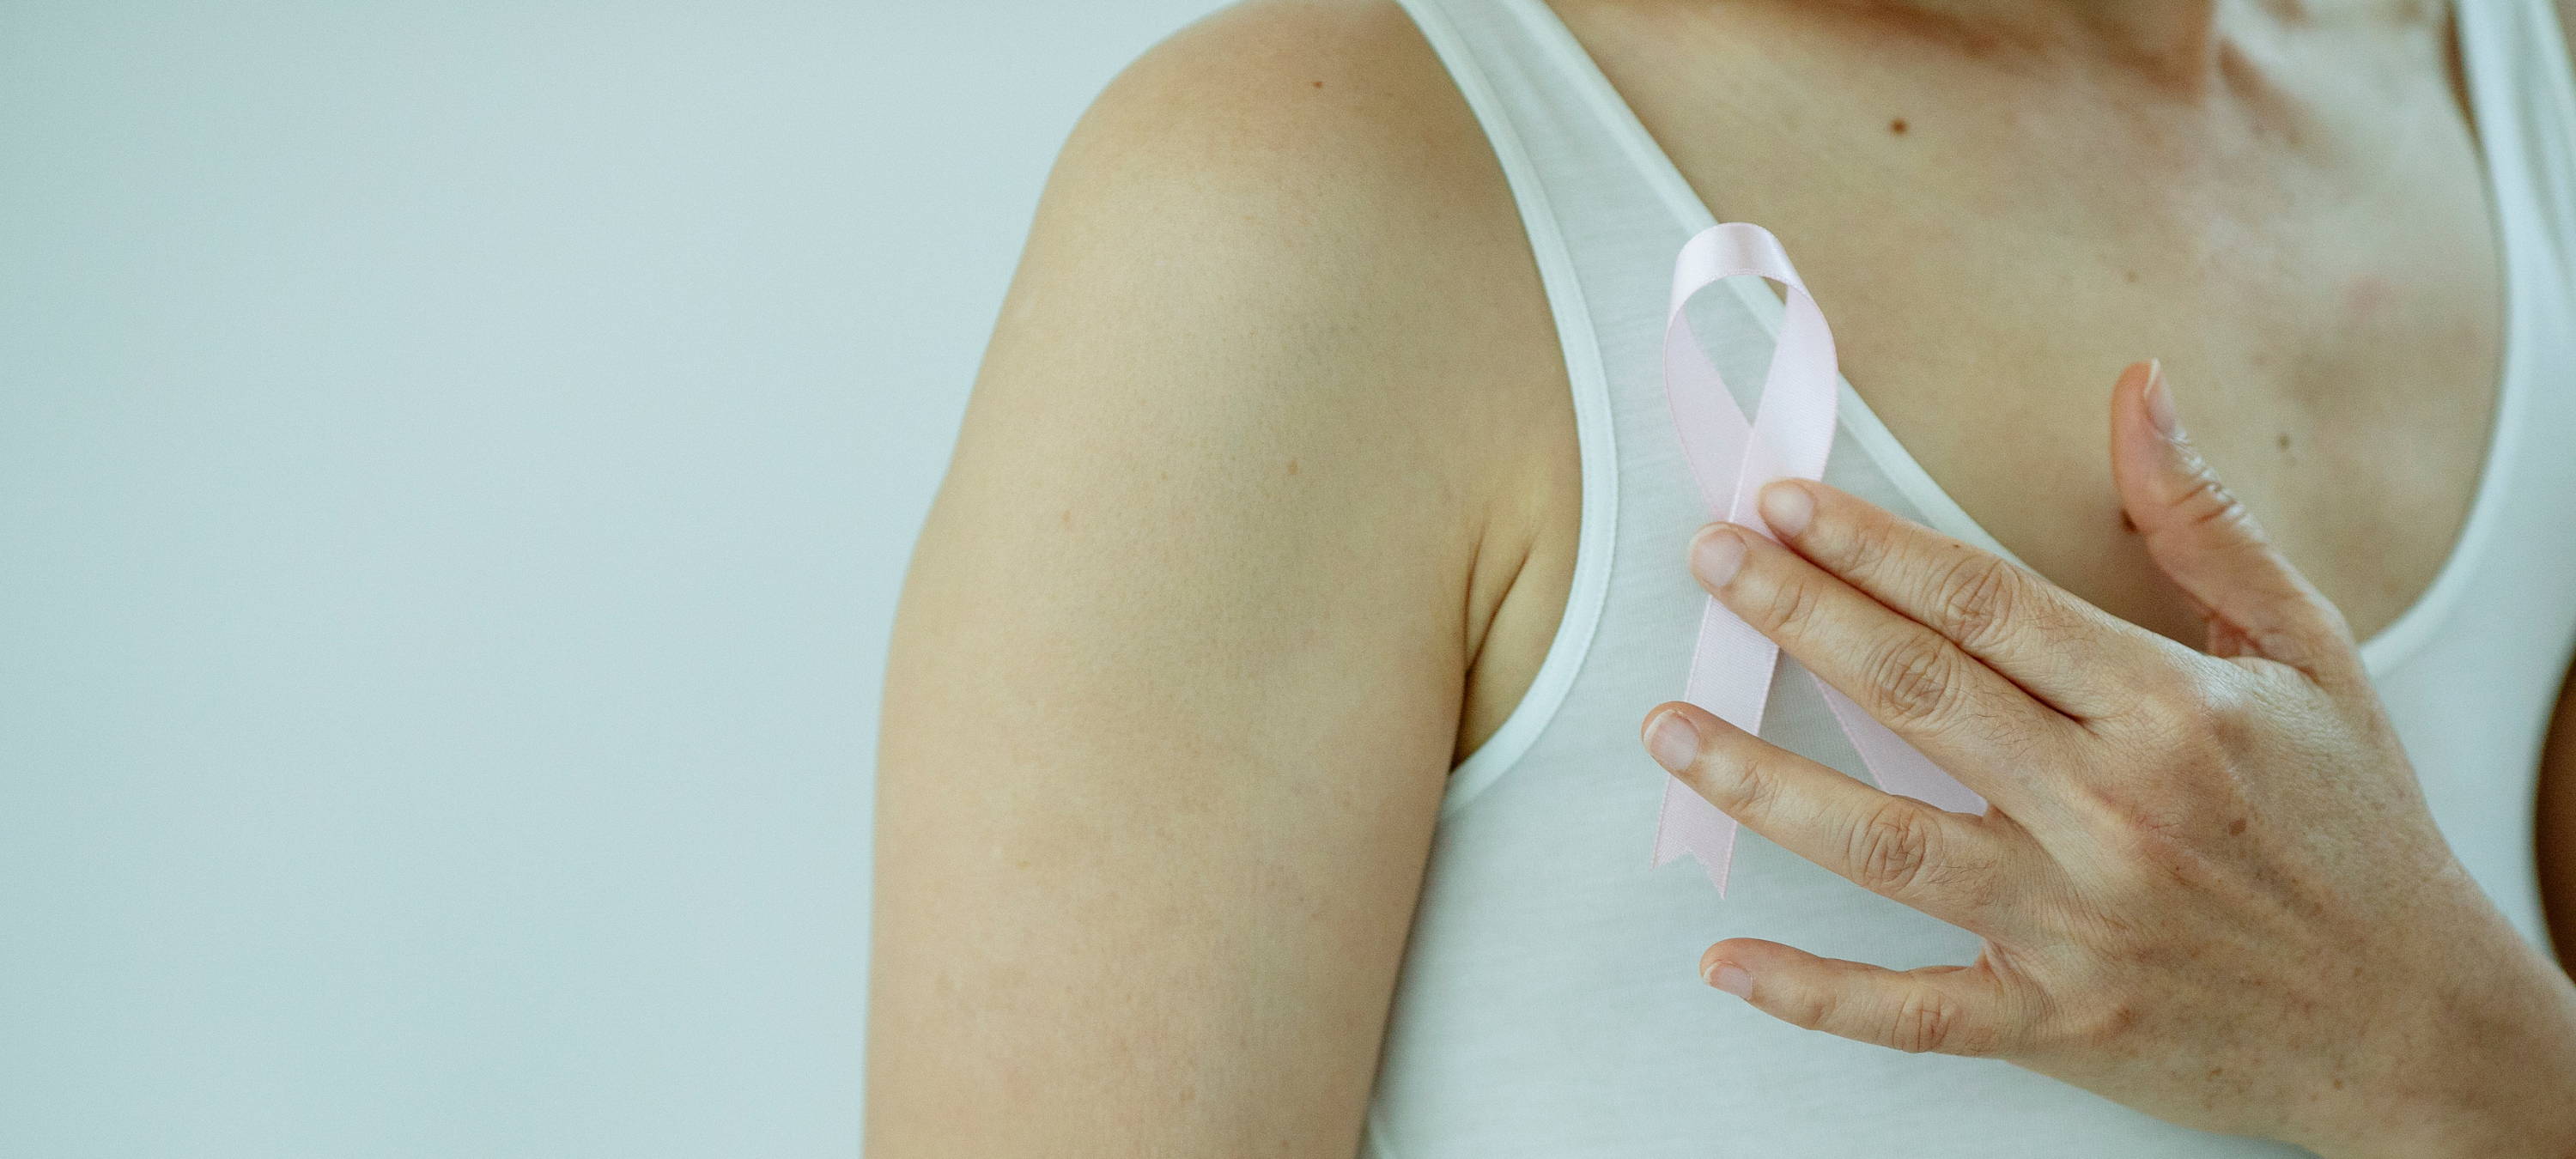 Frau, die rosa Schlaufe vor ihrer Brust hält, um Aufmerksamkeit für das Thema Brustkrebs zu schaffen.